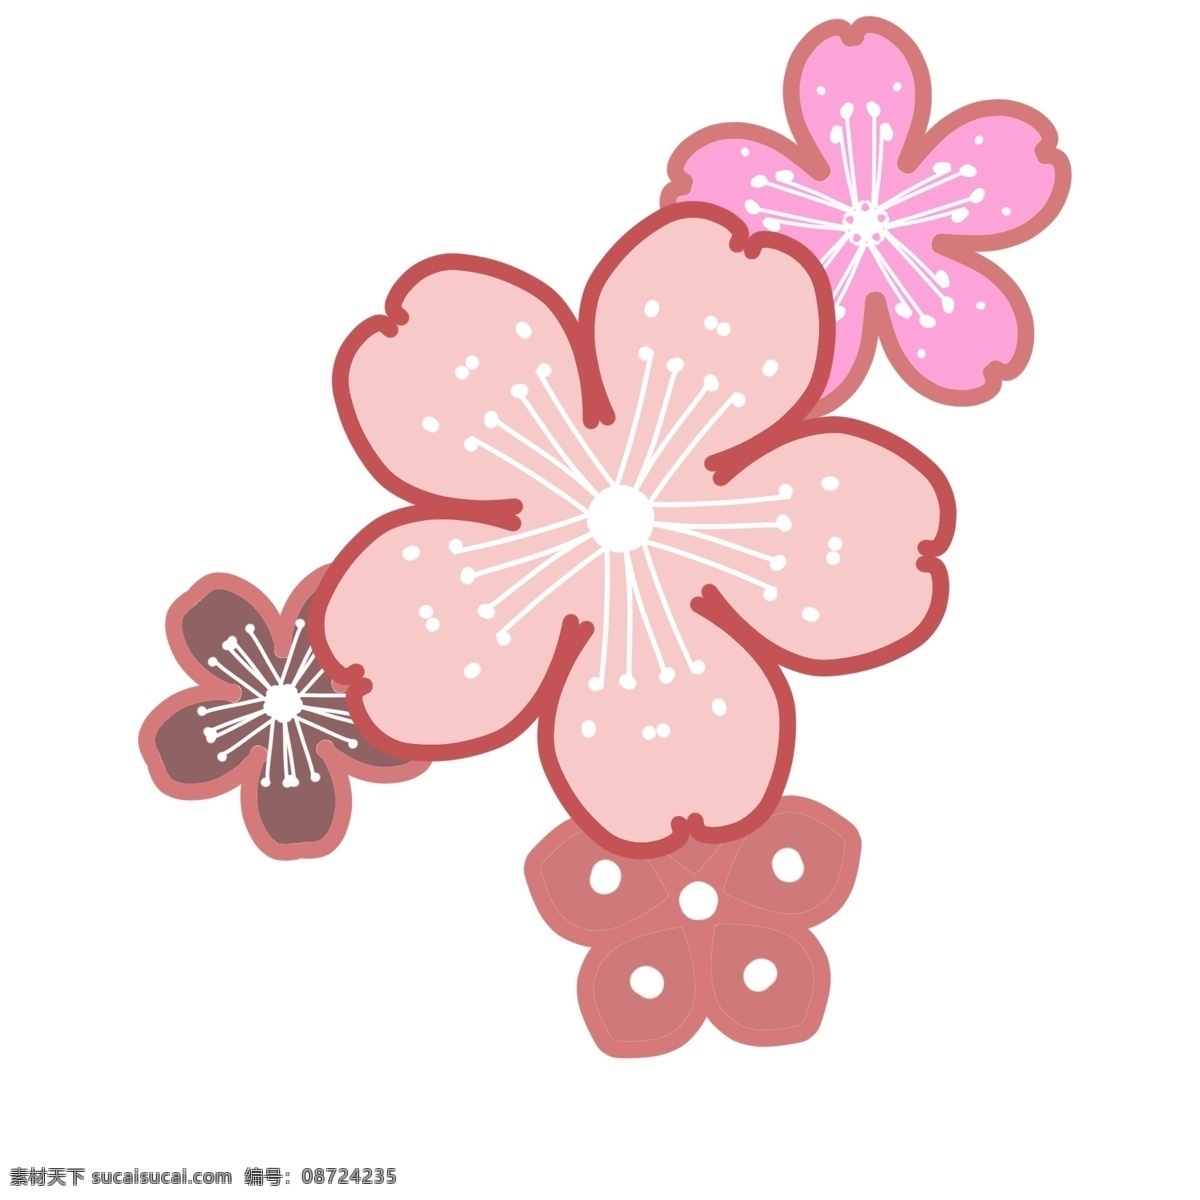 多彩 粉色 樱花瓣 插画 四朵樱花插画 白色花蕊 粉色花瓣 花朵插画 植物 美丽的樱花 多彩粉色樱花